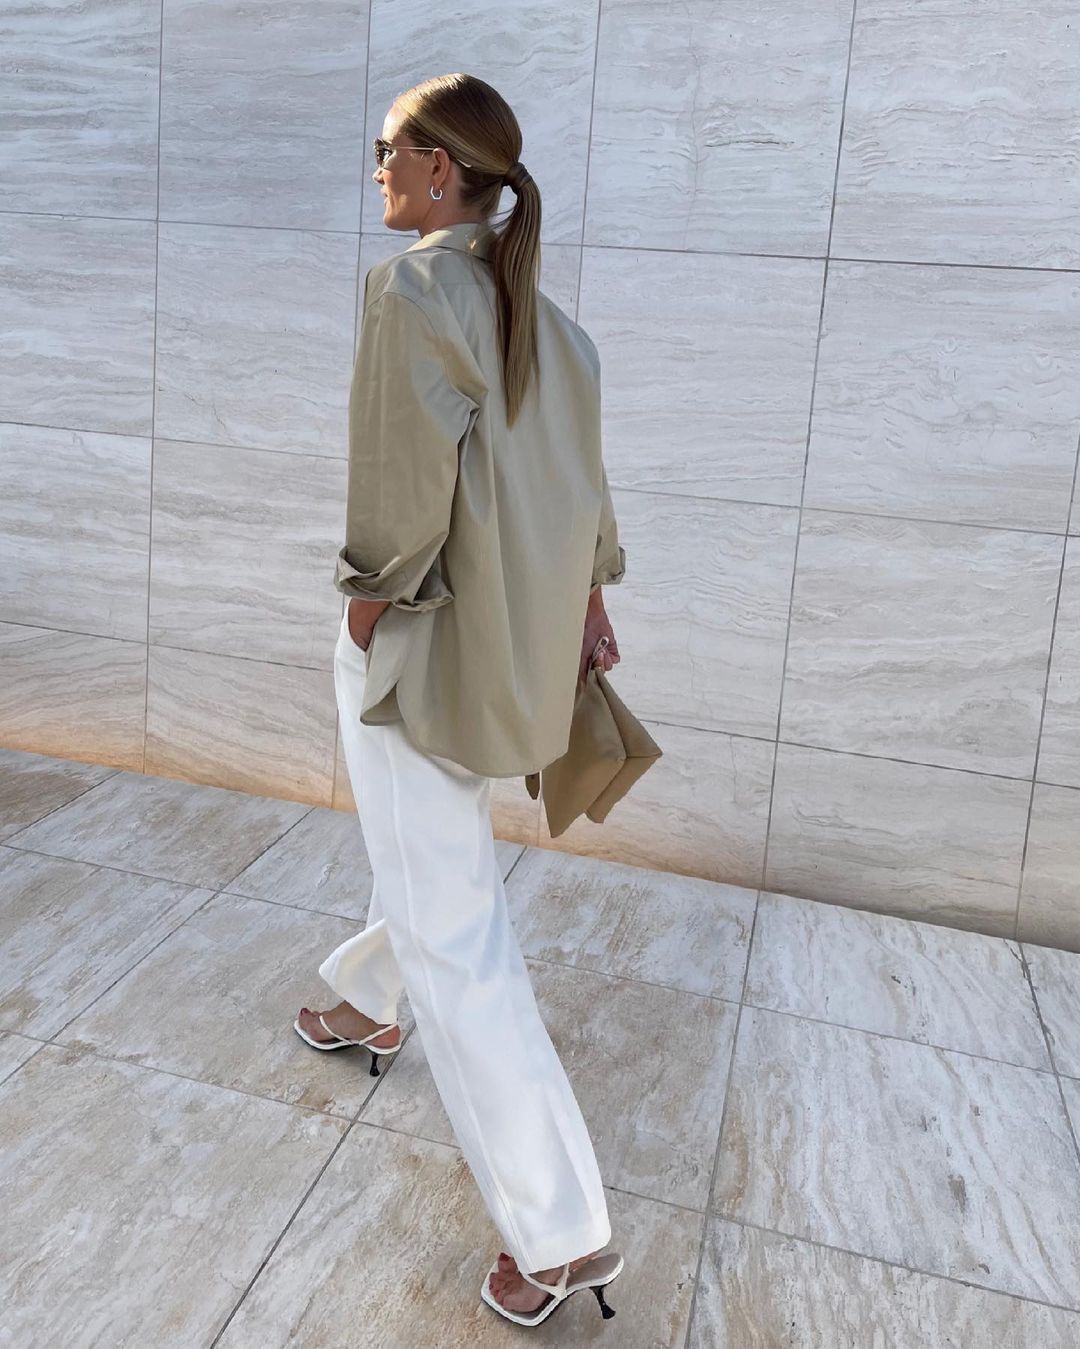 роузи хантингтон-уайтли модель гардероб базовый лето 2021